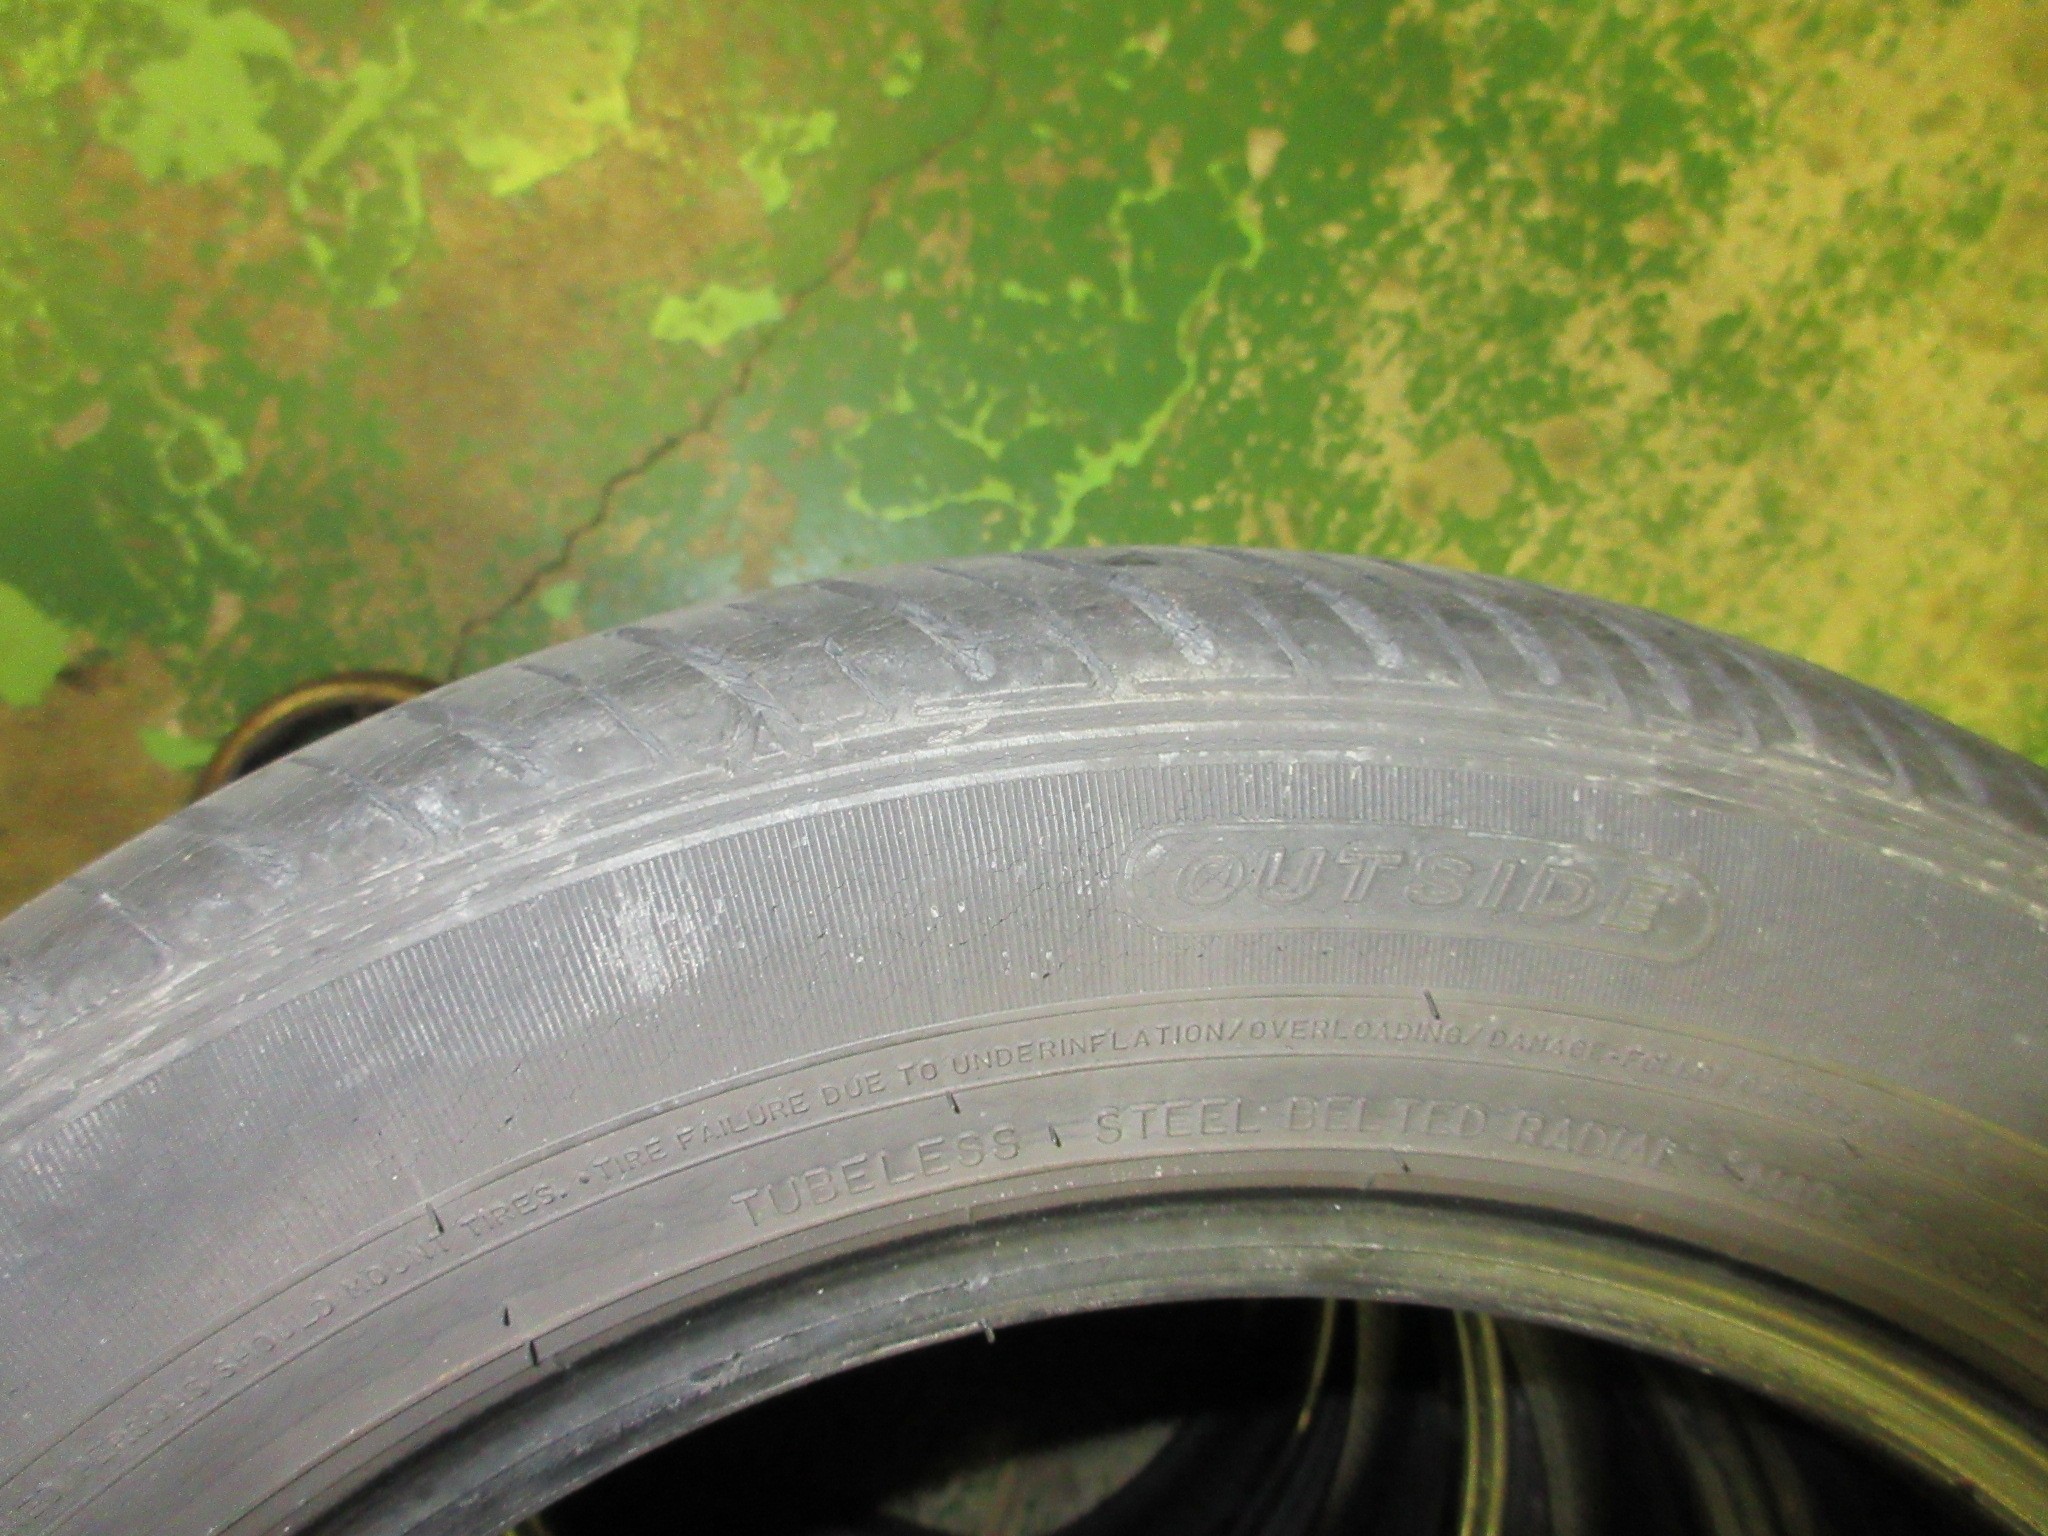 タイヤのひび割れは要注意 ダイハツ タント タイヤ Staff日記 コクピット さつま貝塚 車のカスタマイズにかかわるスタッフより